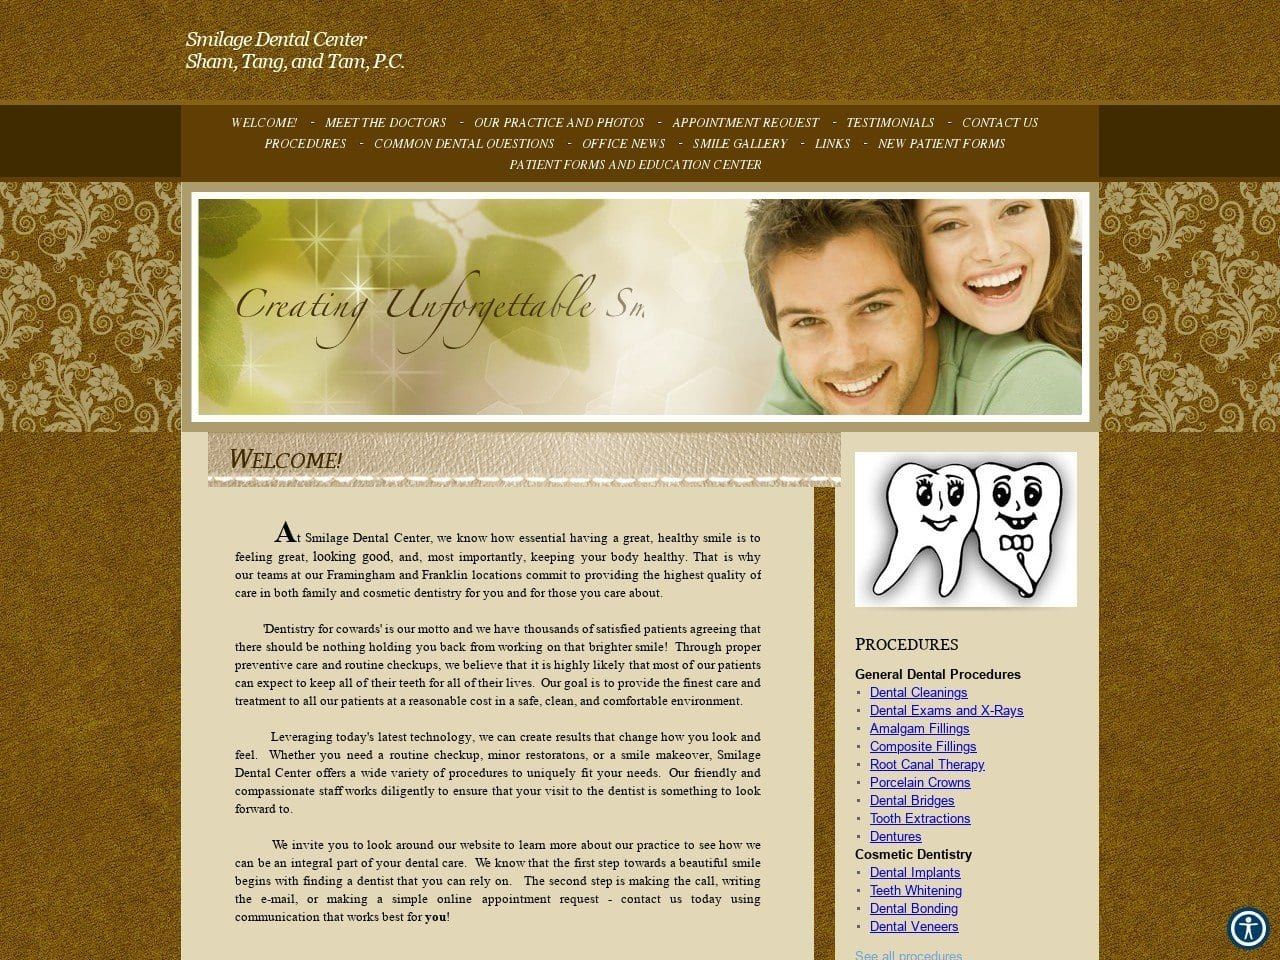 Smilage Dental Center Website Screenshot from smilagecenter.com